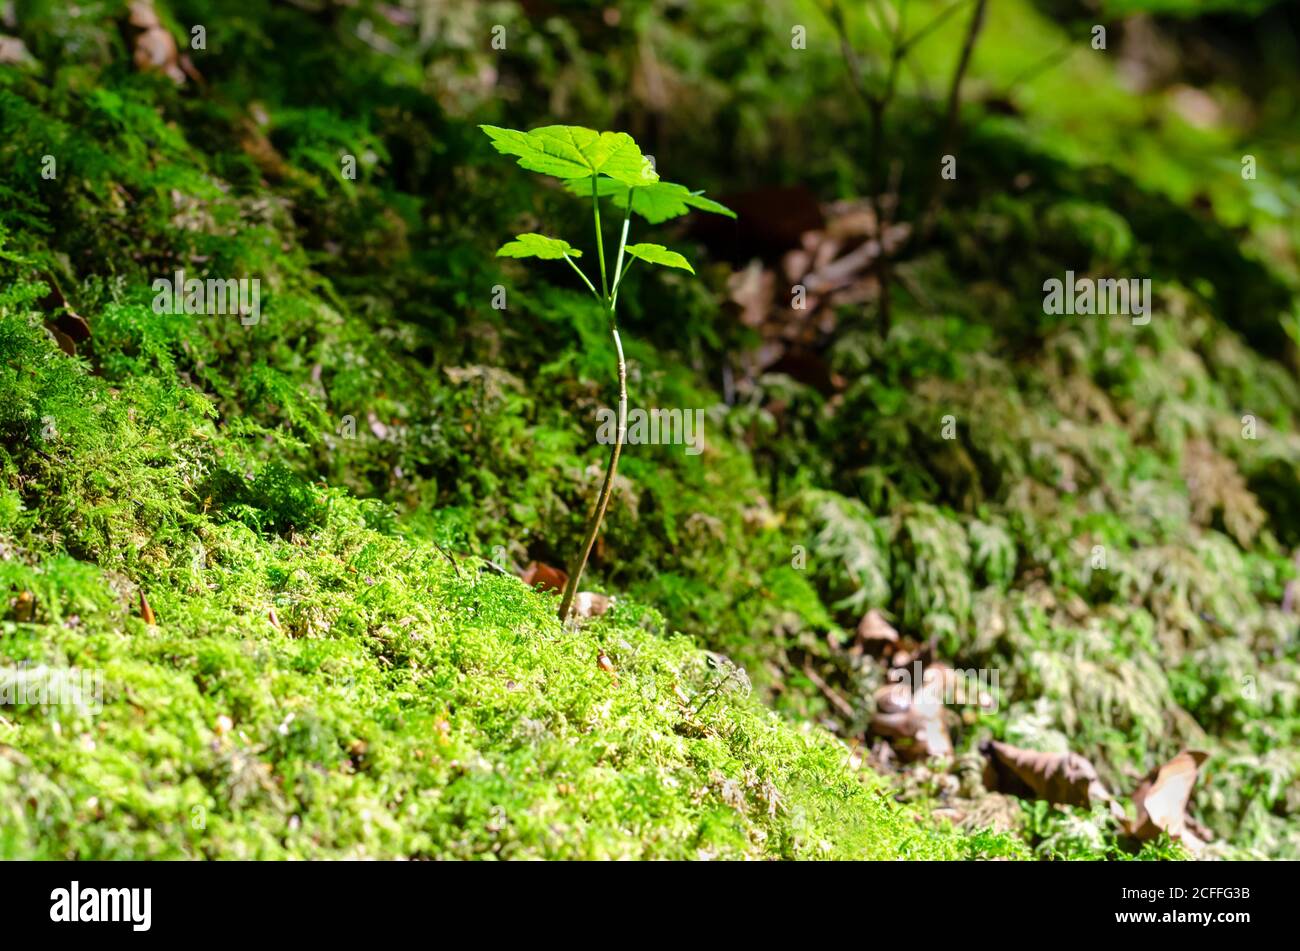 Junger Platanenbaum im Sonnenlicht auf einem moosigen Waldboden. Eine Art von Acer pseudoplatanus, einem Ahornbaum, der in Mitteleuropa beheimatet ist. Stockfoto